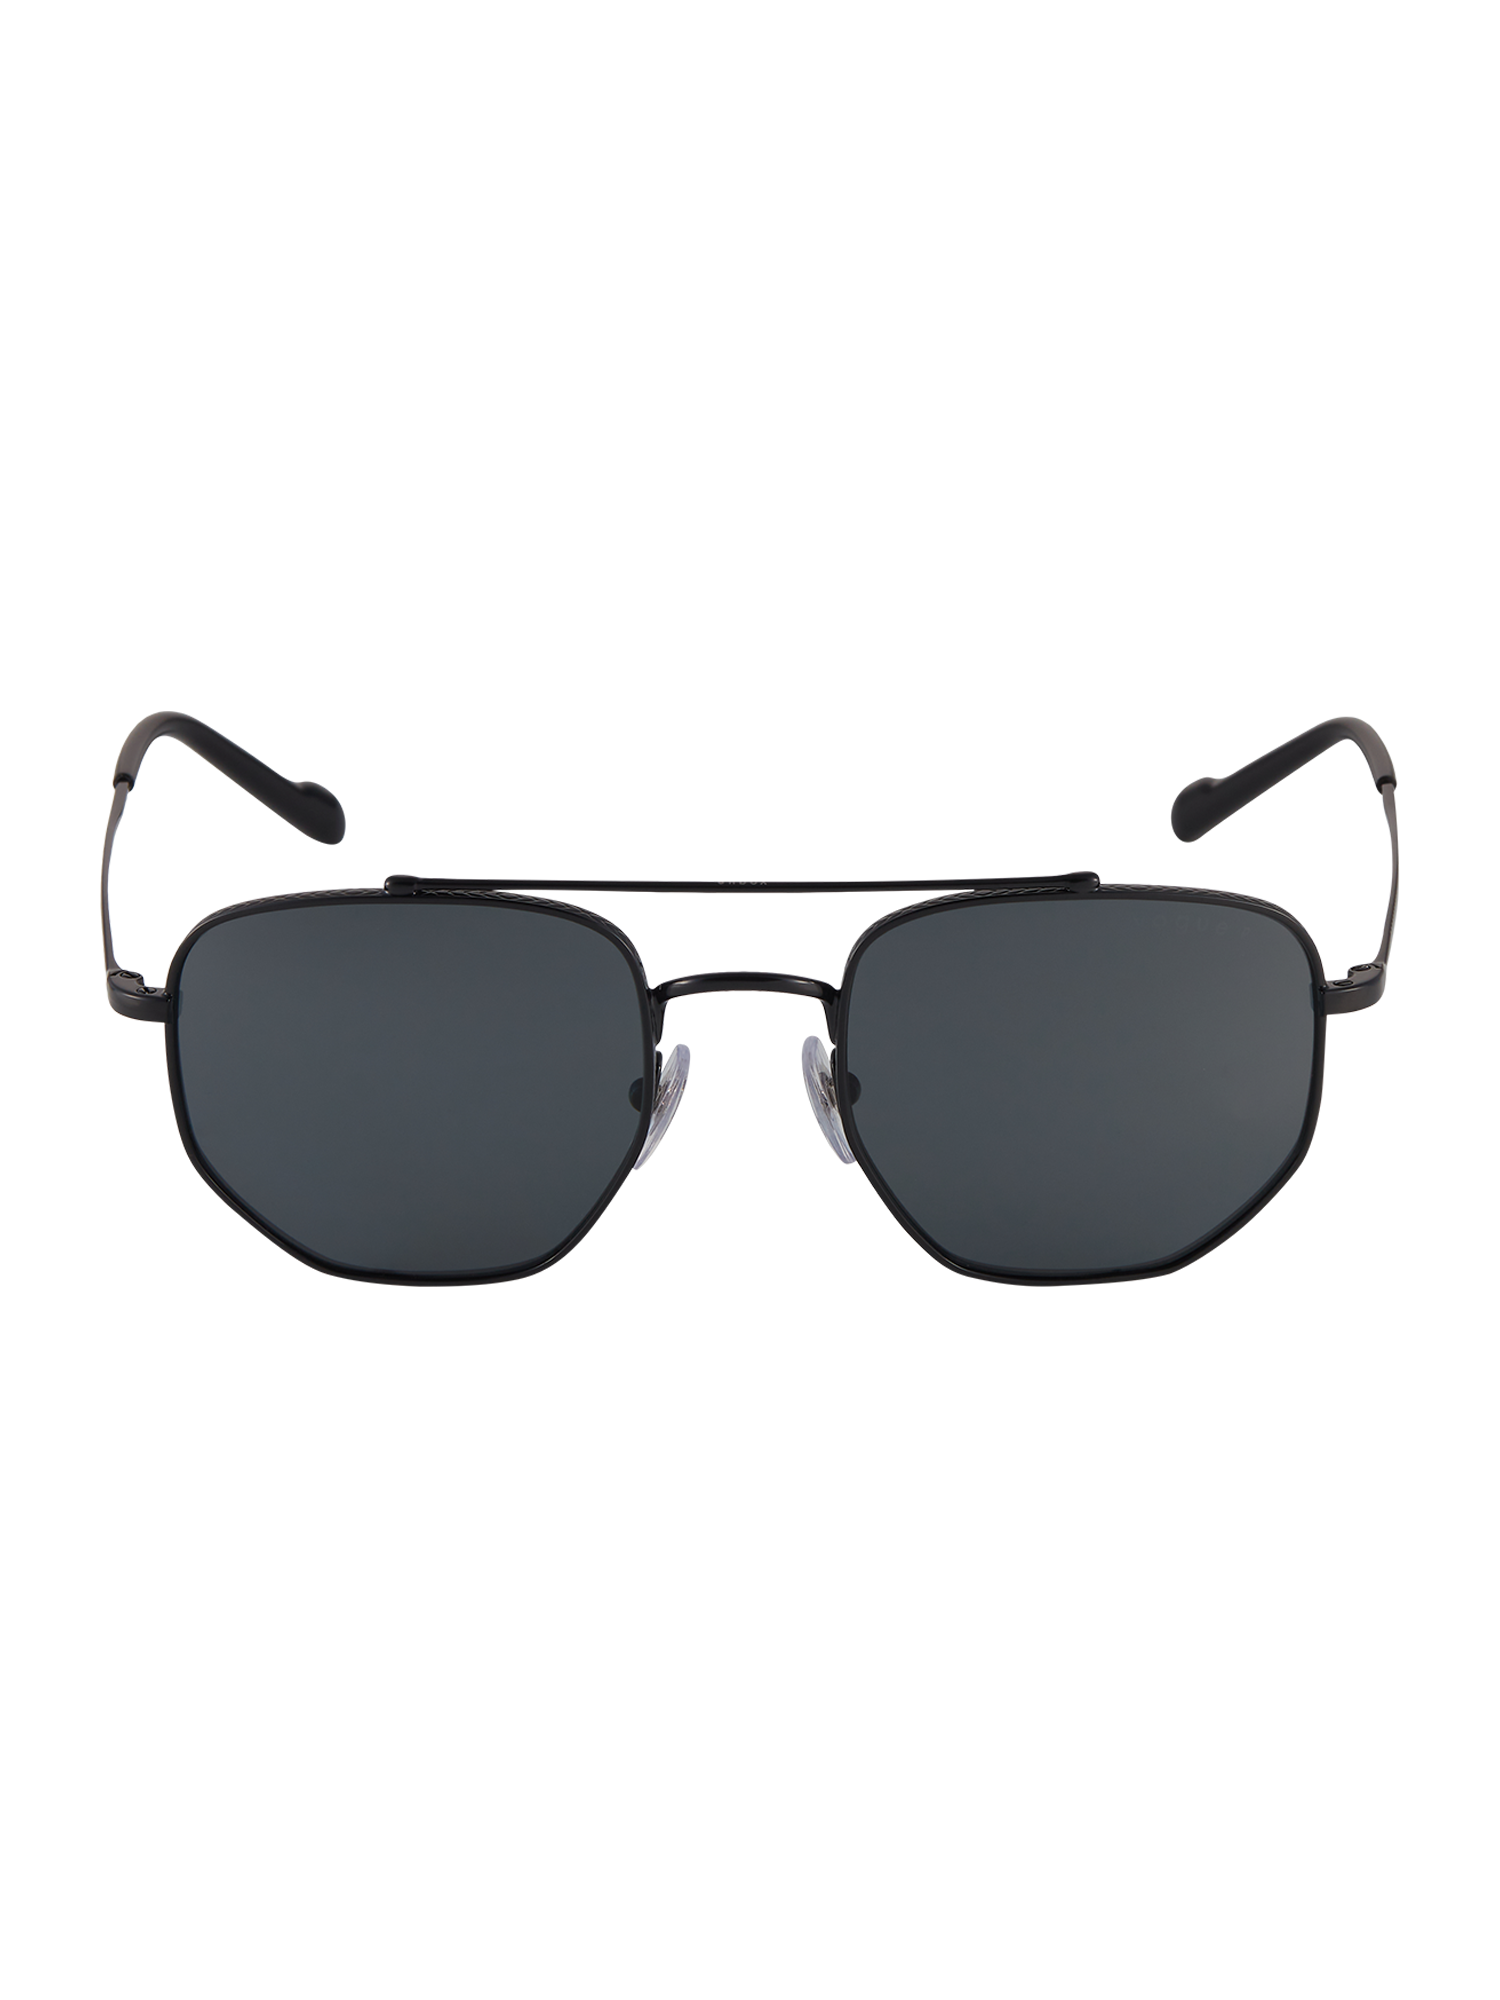 TVDNW Okulary przeciwsłoneczne VOGUE Eyewear Sonnenbrille 0VO4220S w kolorze Czarnym 